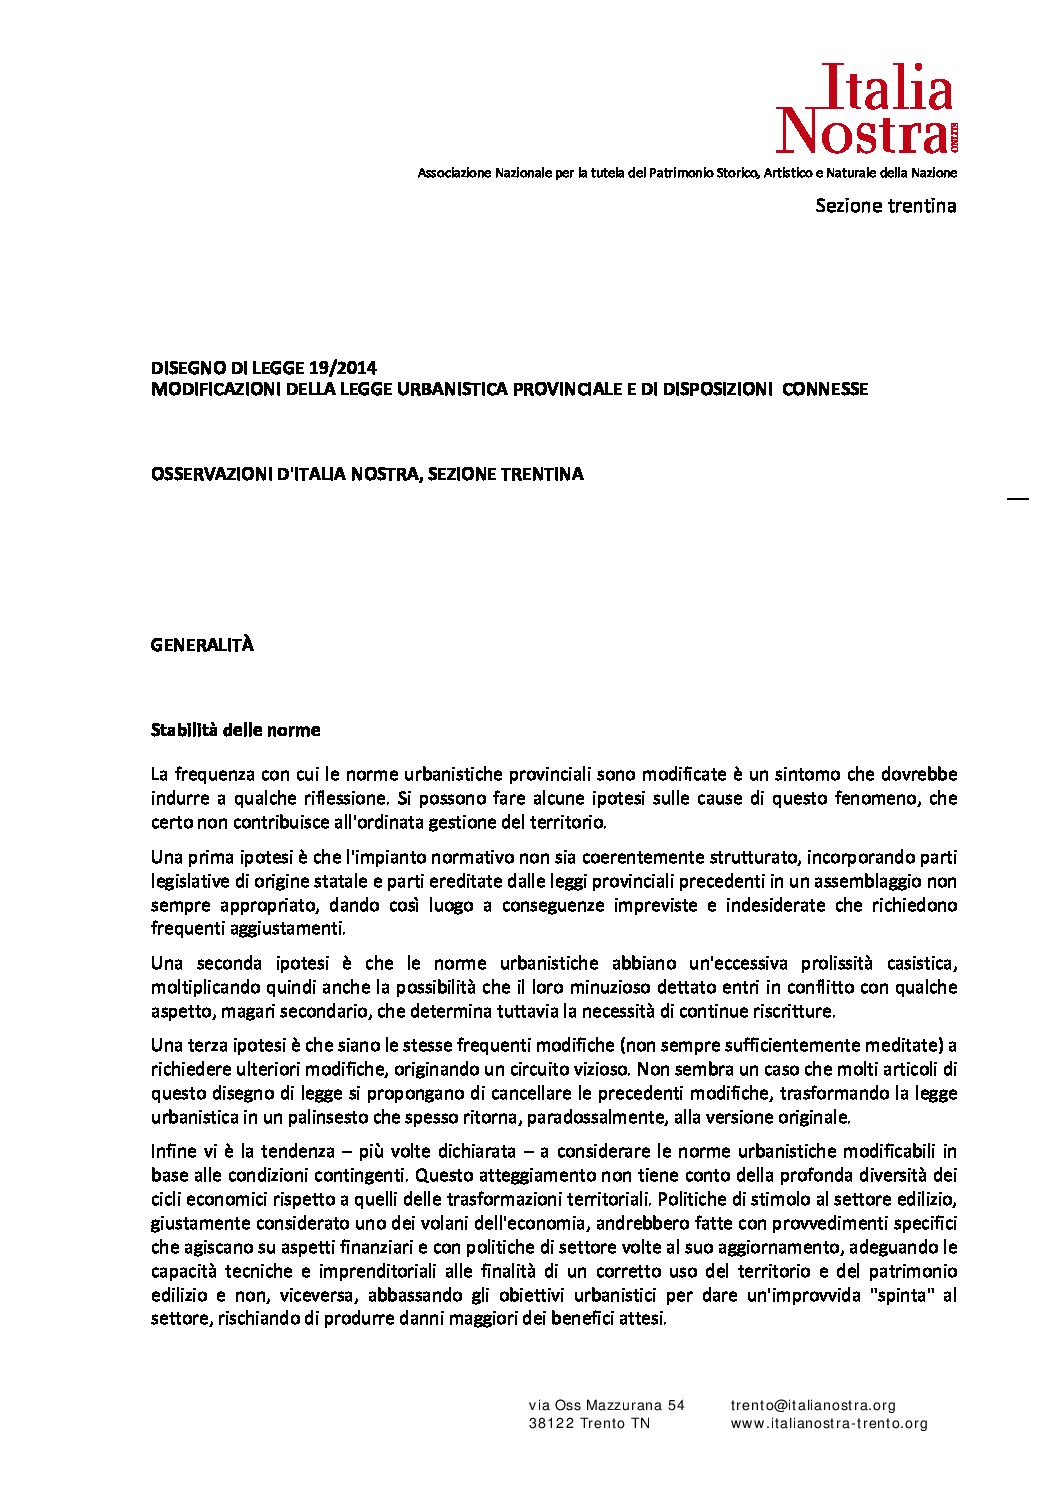 Osservazioni Italia Nostra alla proposta di modifica della Legge urbanistica provinciale